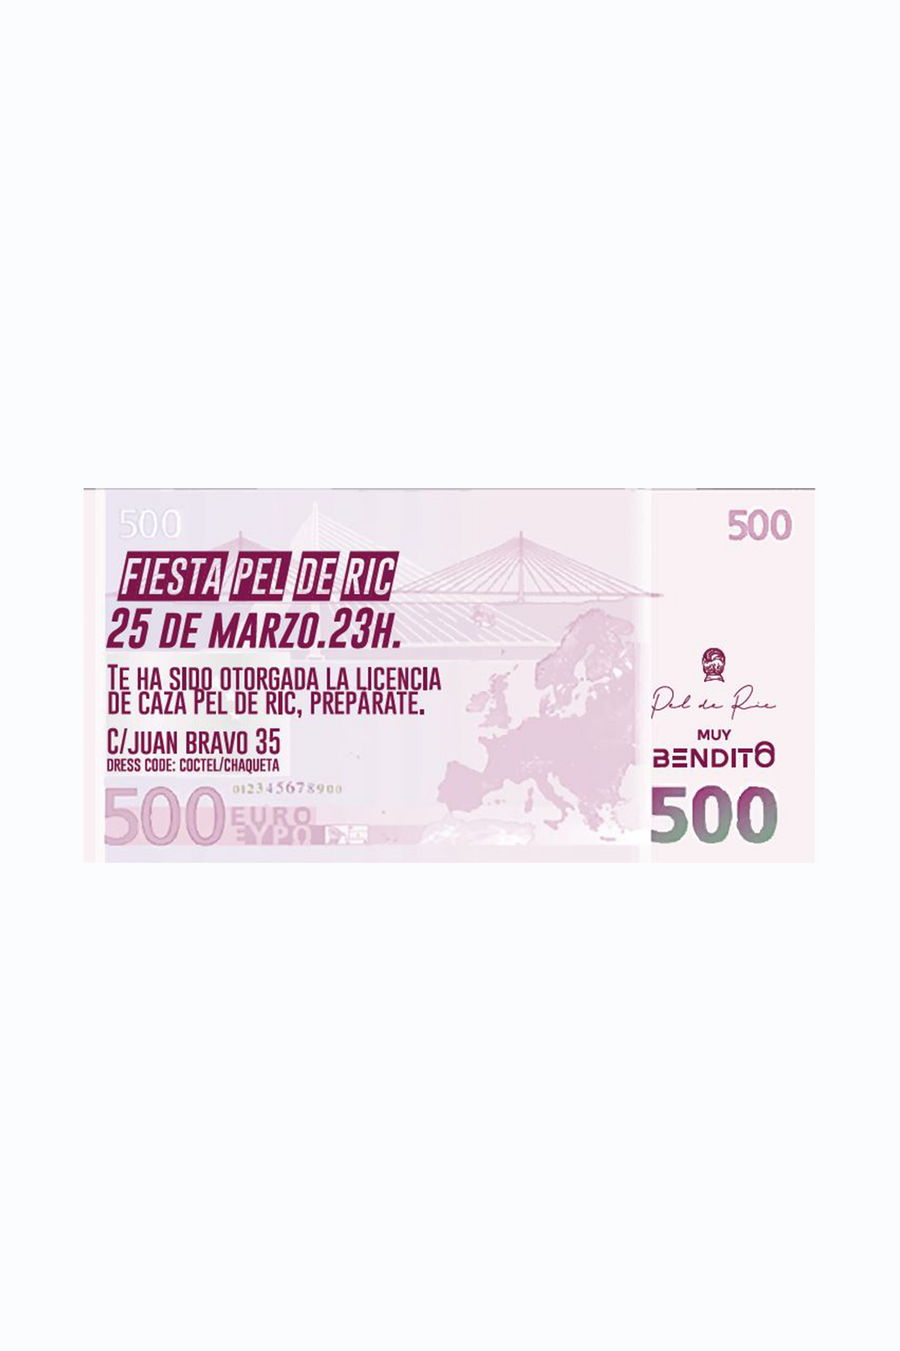 Fiesta Muy Bendito ft Pel de Ric. 25/03/2022